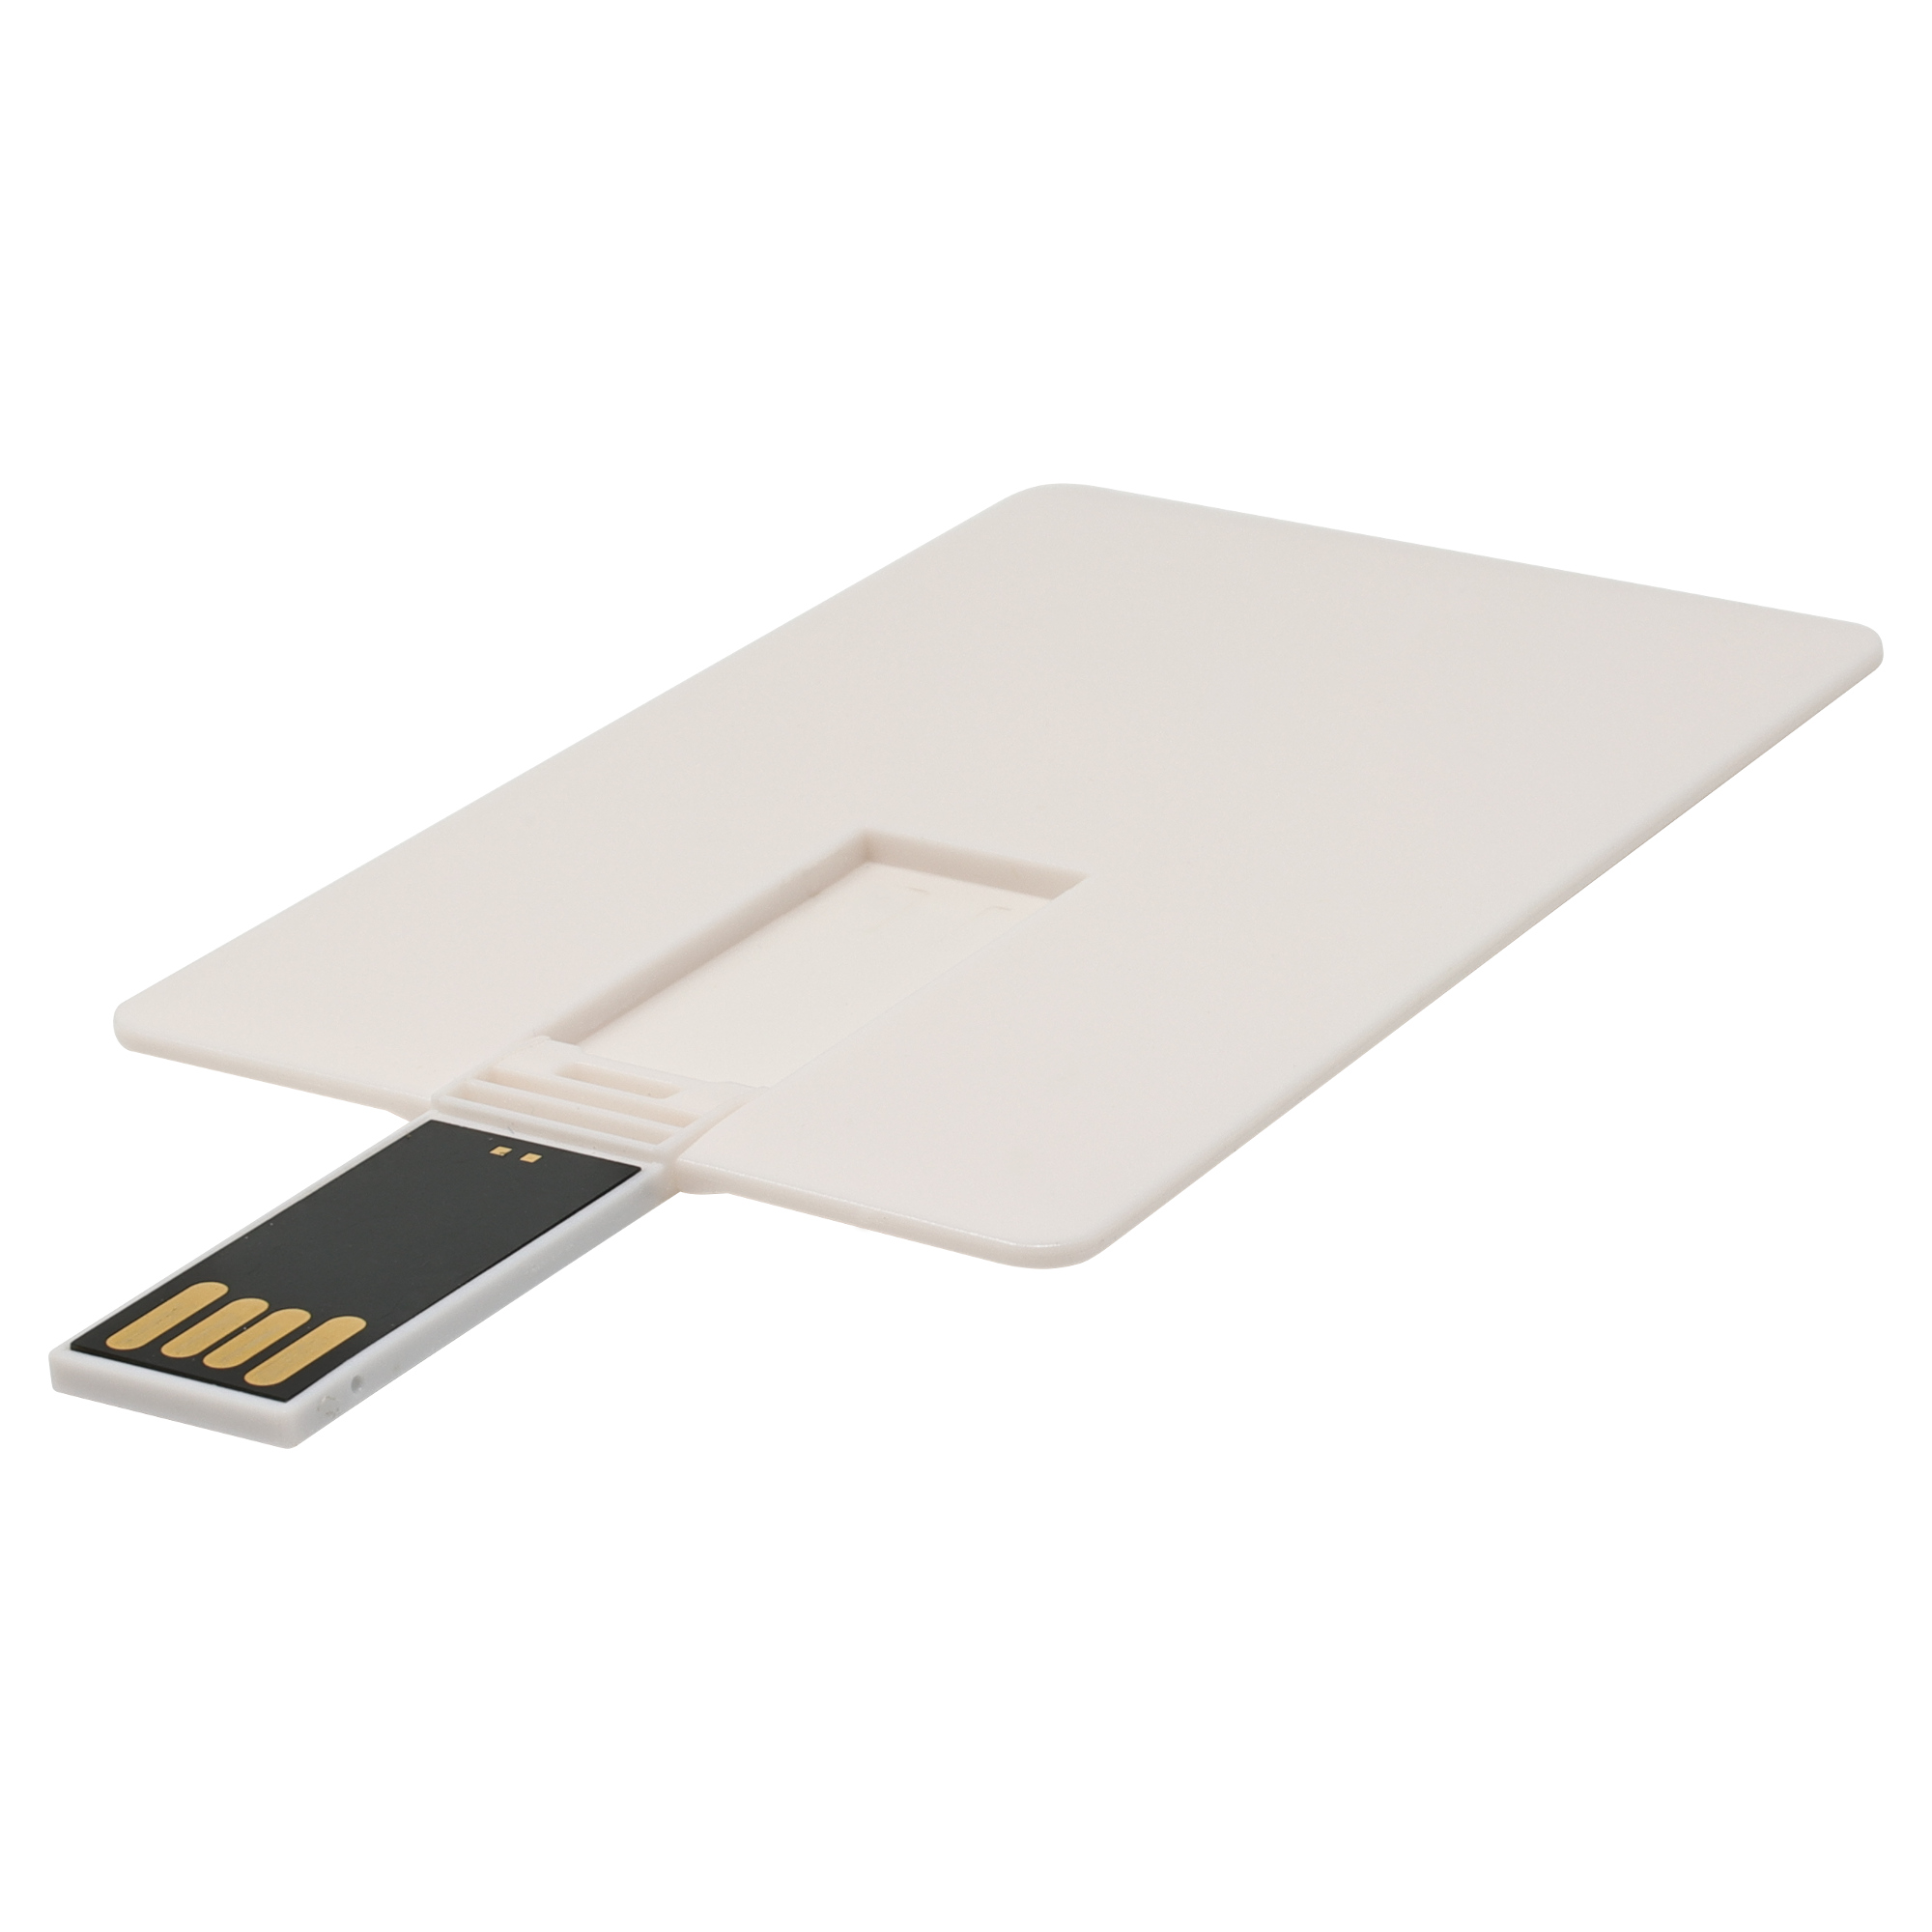 Memoria USB Card
Color blanco capacidad 16 GB